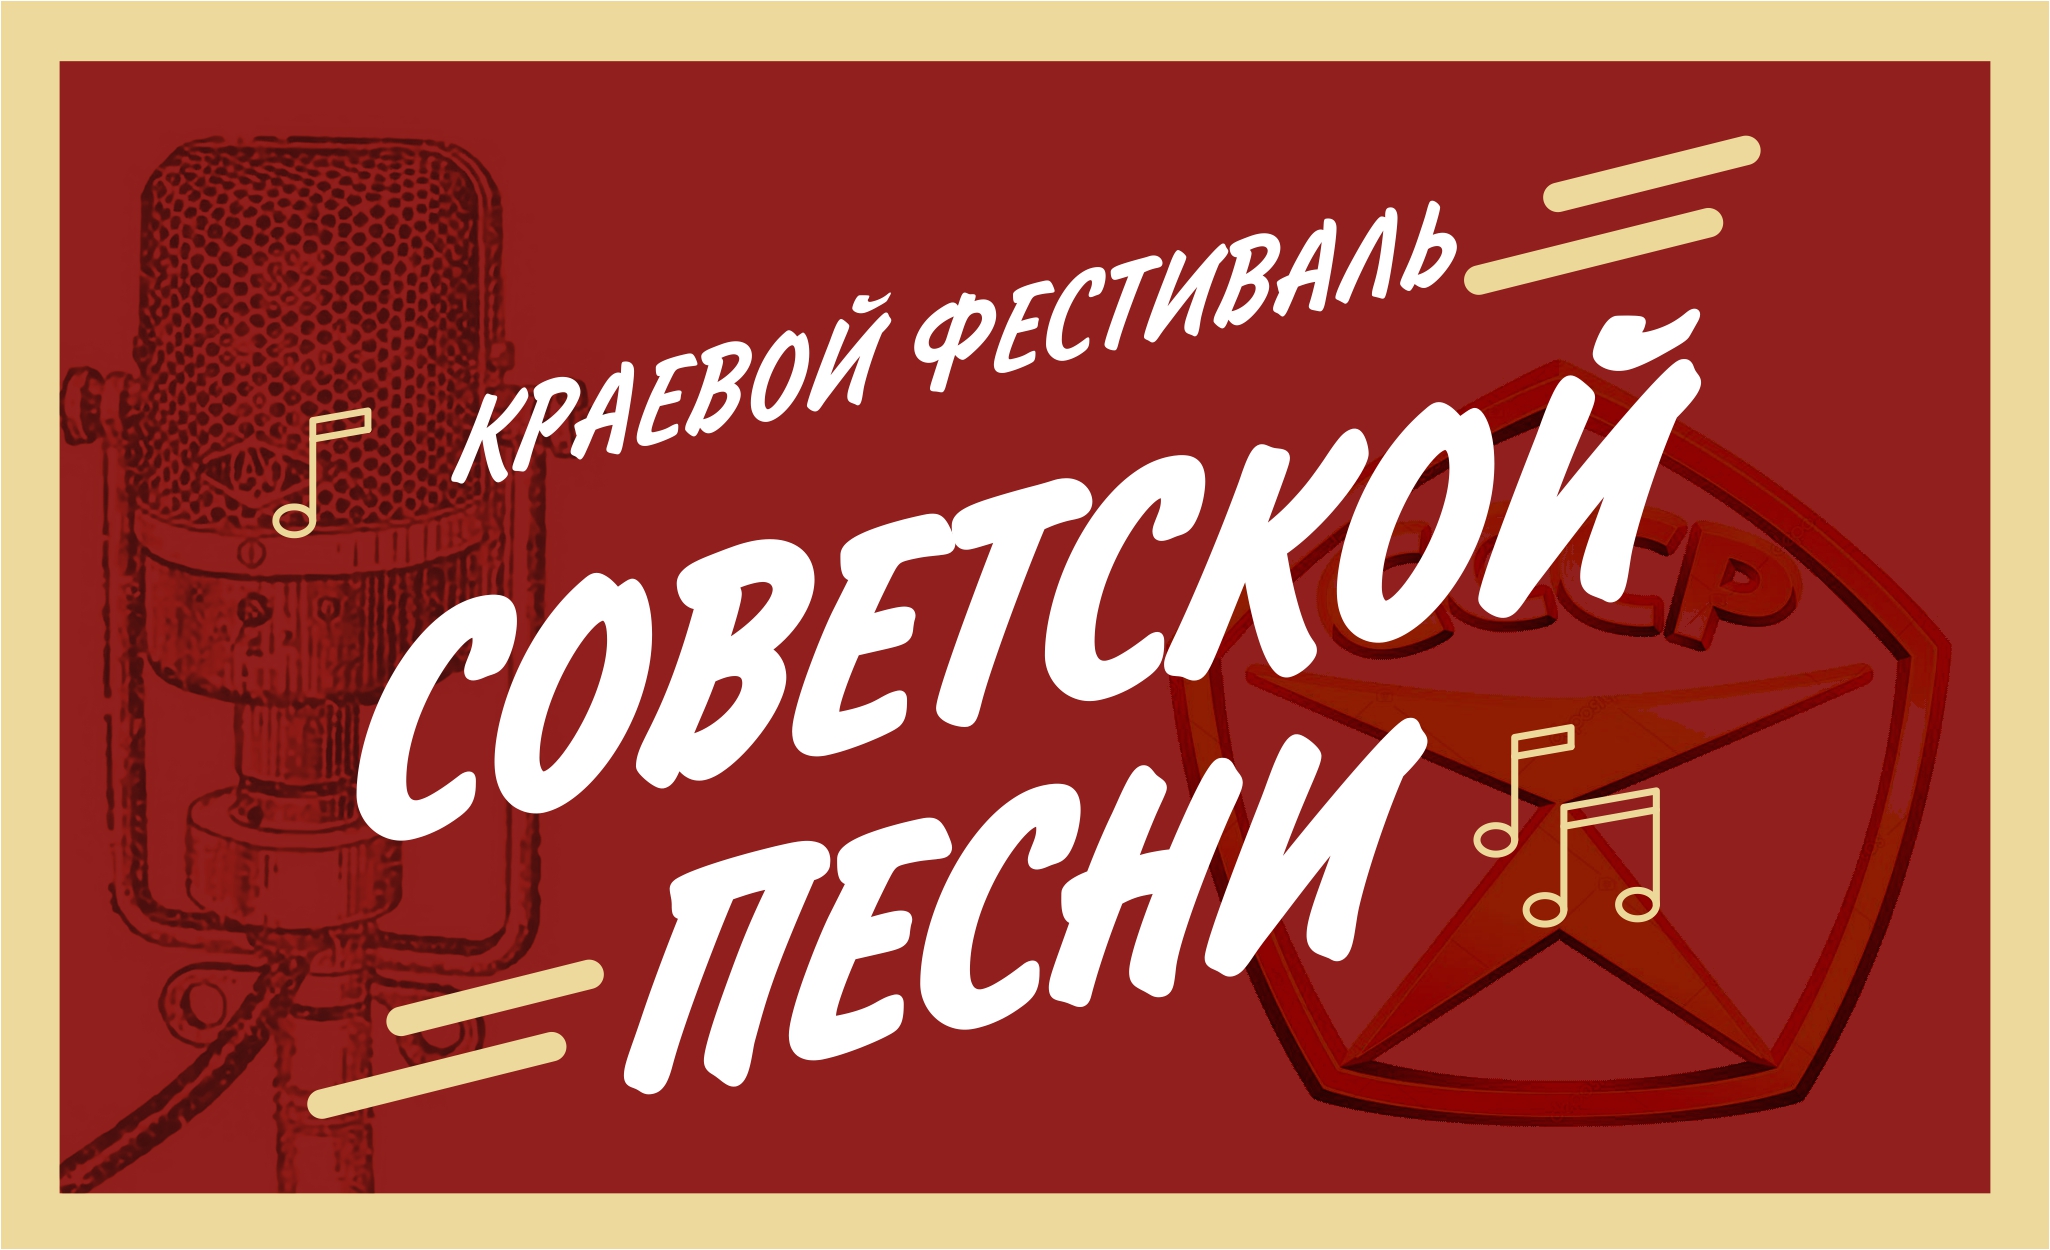 Завершён приём заявок на участие в краевом фестивале советской песни, который пройдёт в селе Смоленском